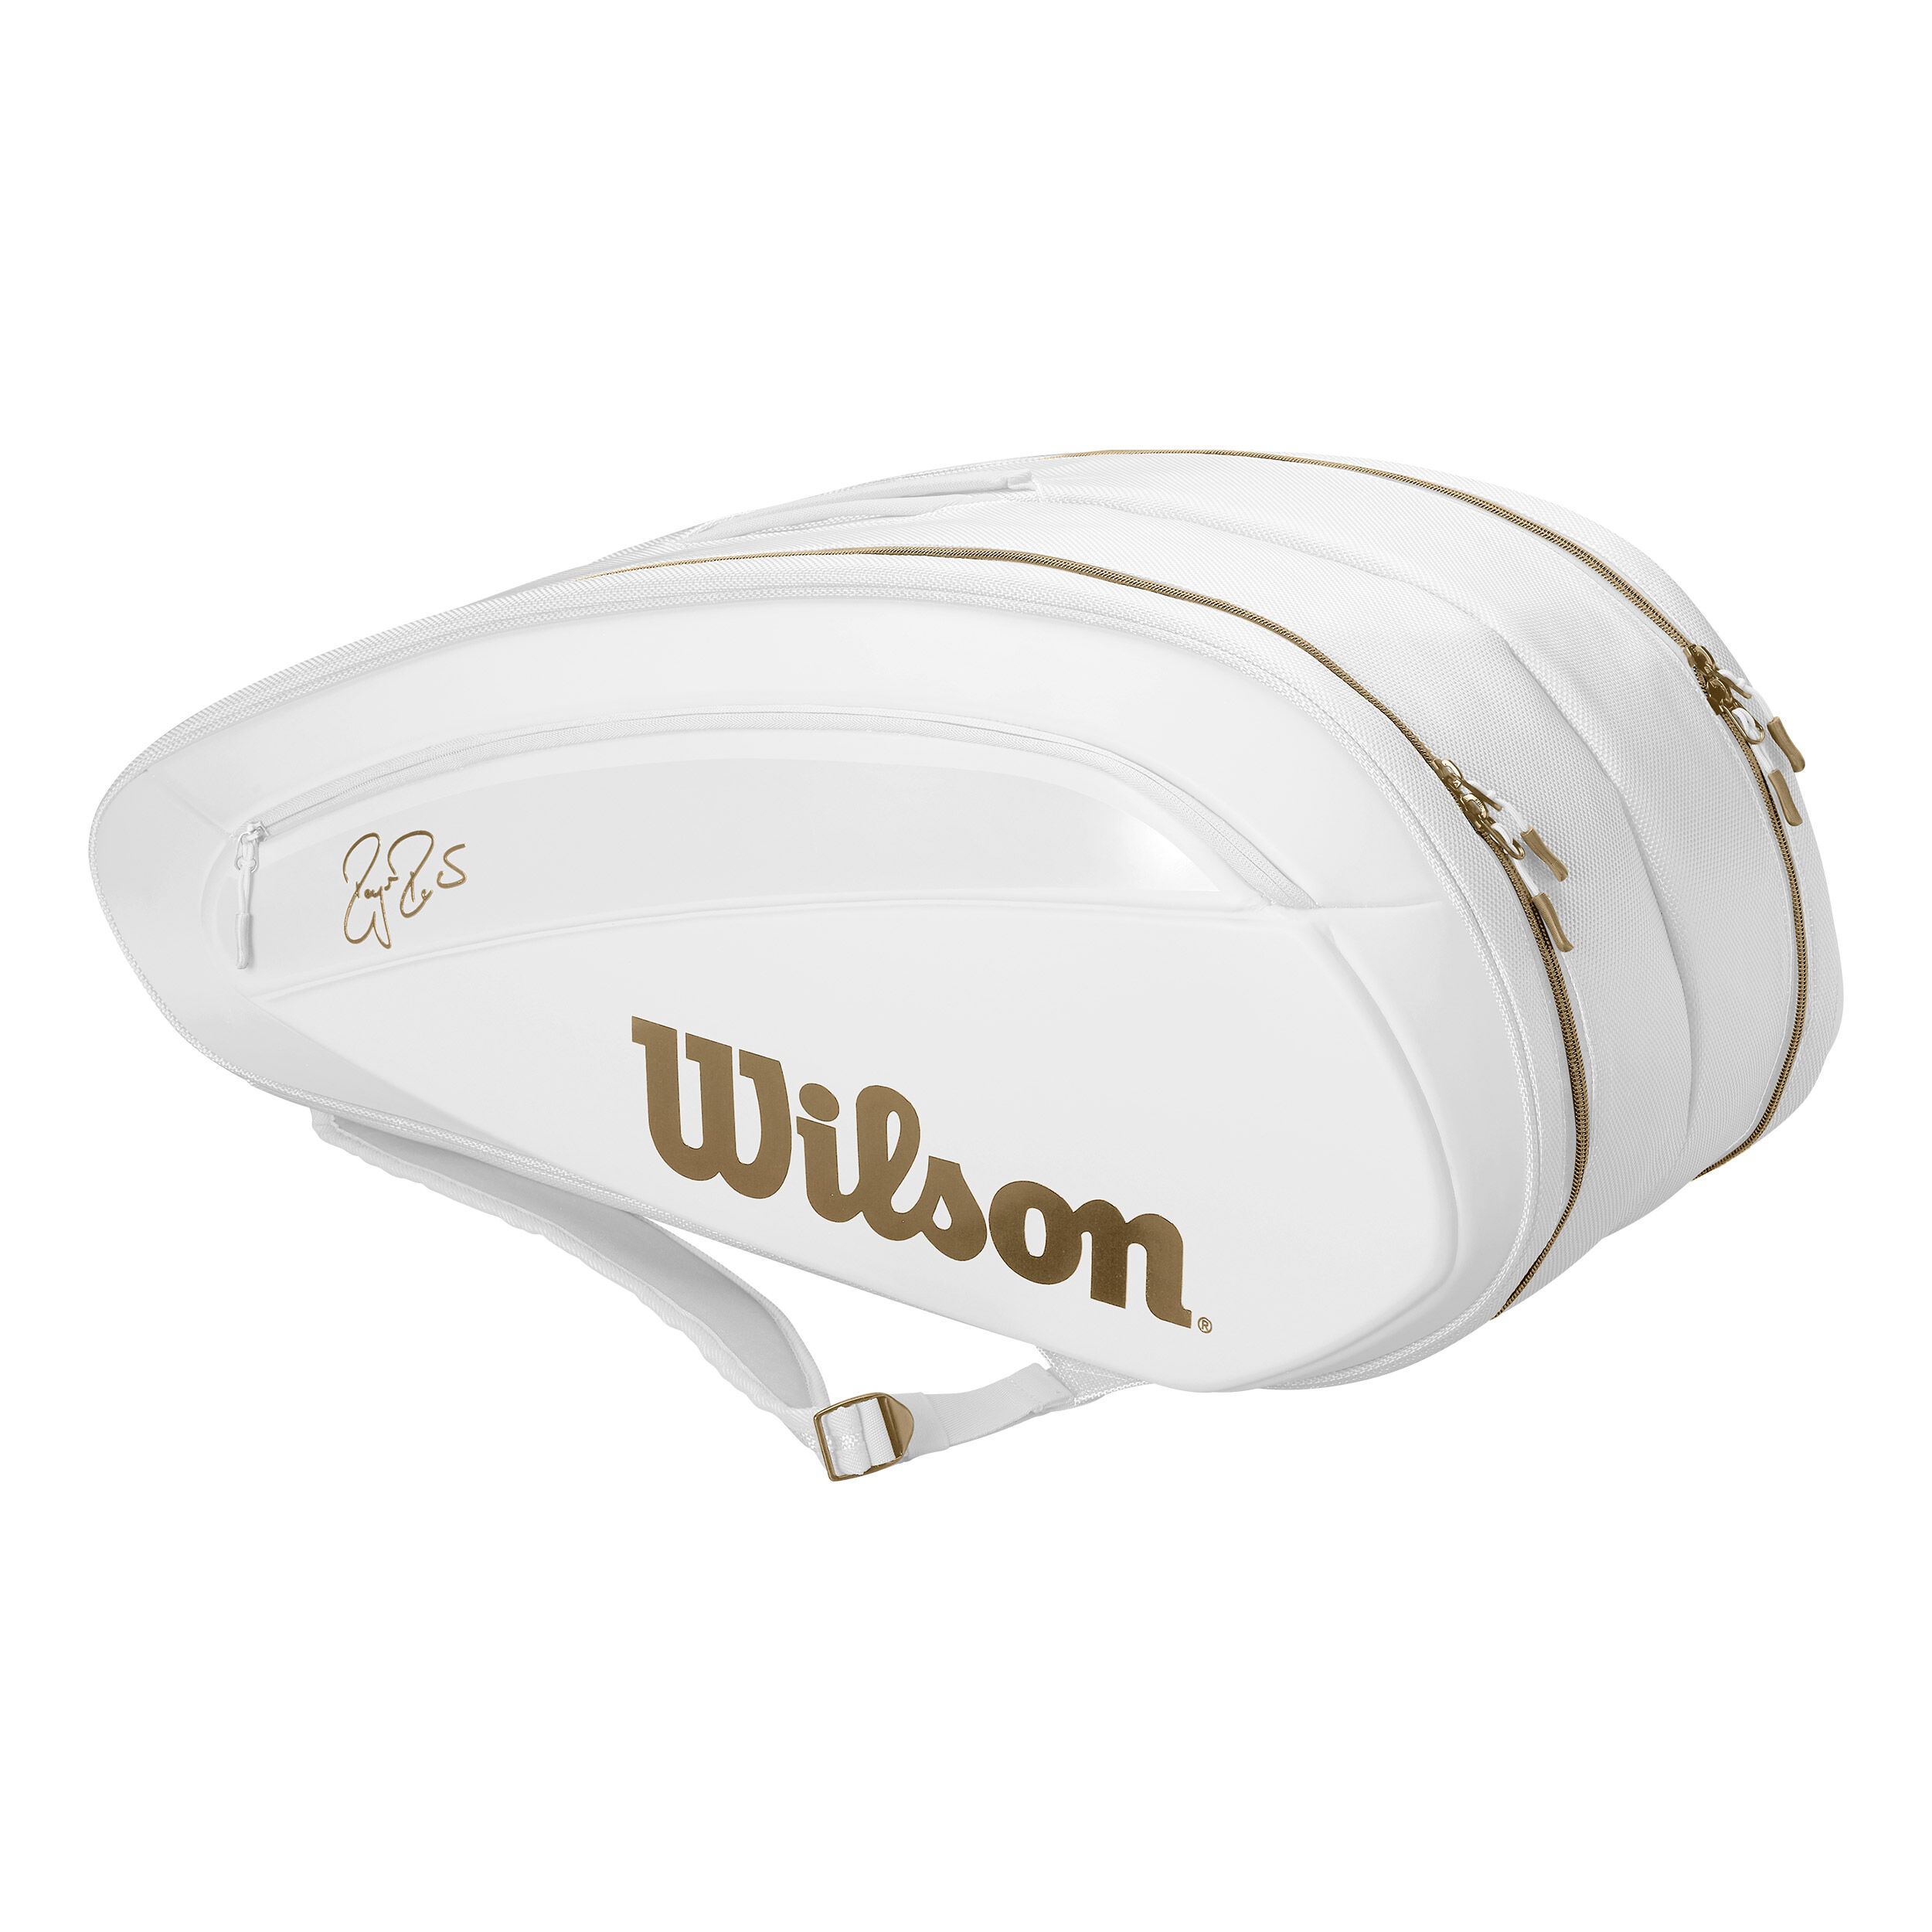 Buy Wilson Federer DNA 12 Pack Racket Bag White, Gold online